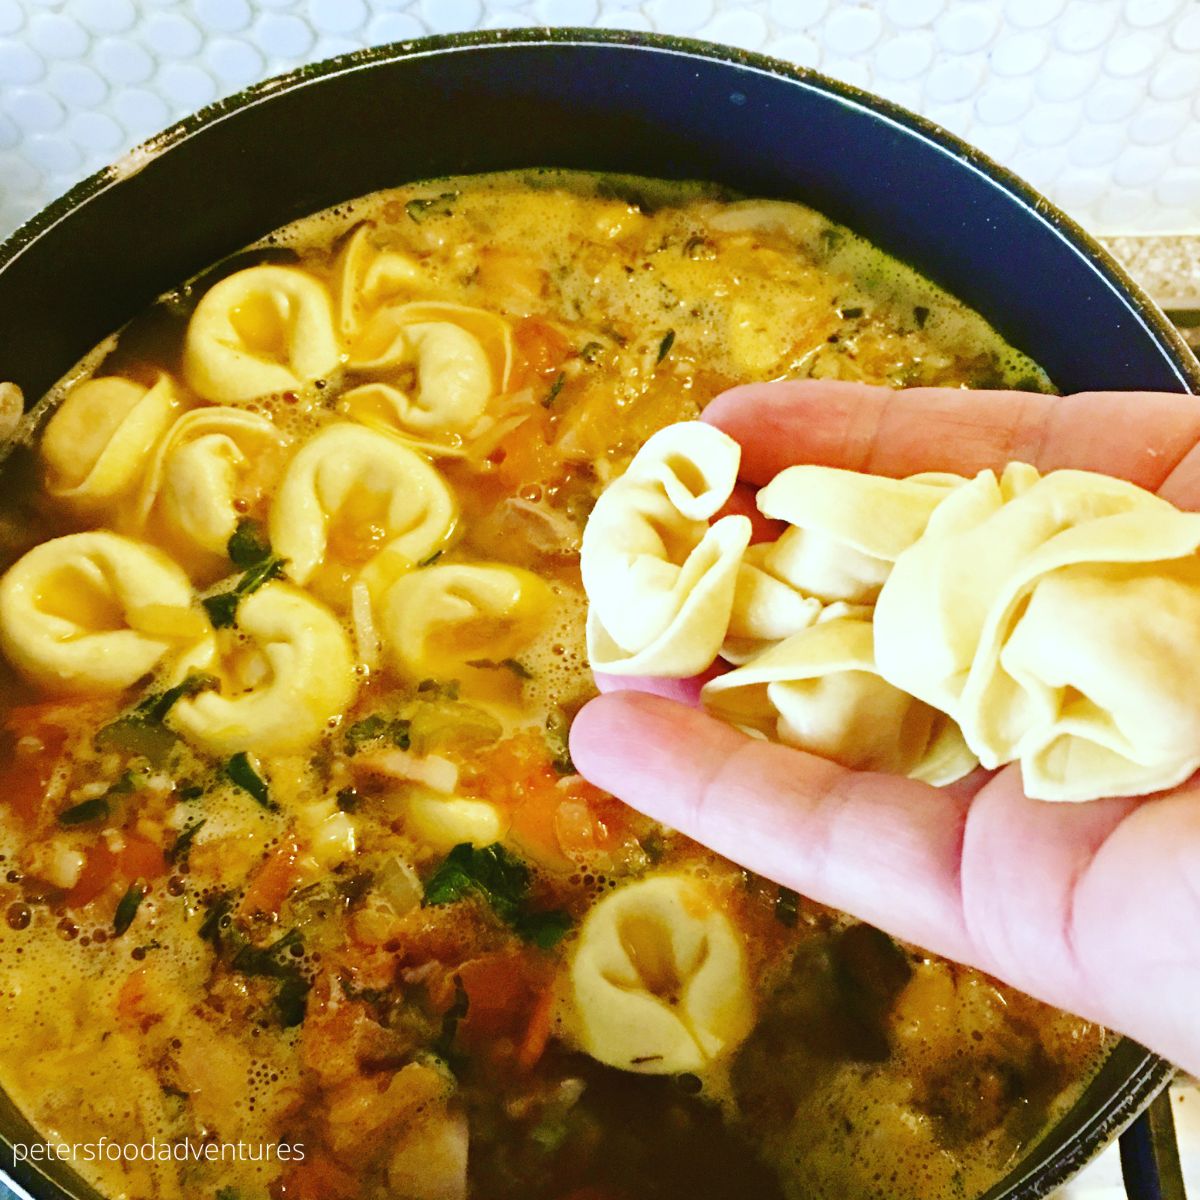 tossing tortellini in soup